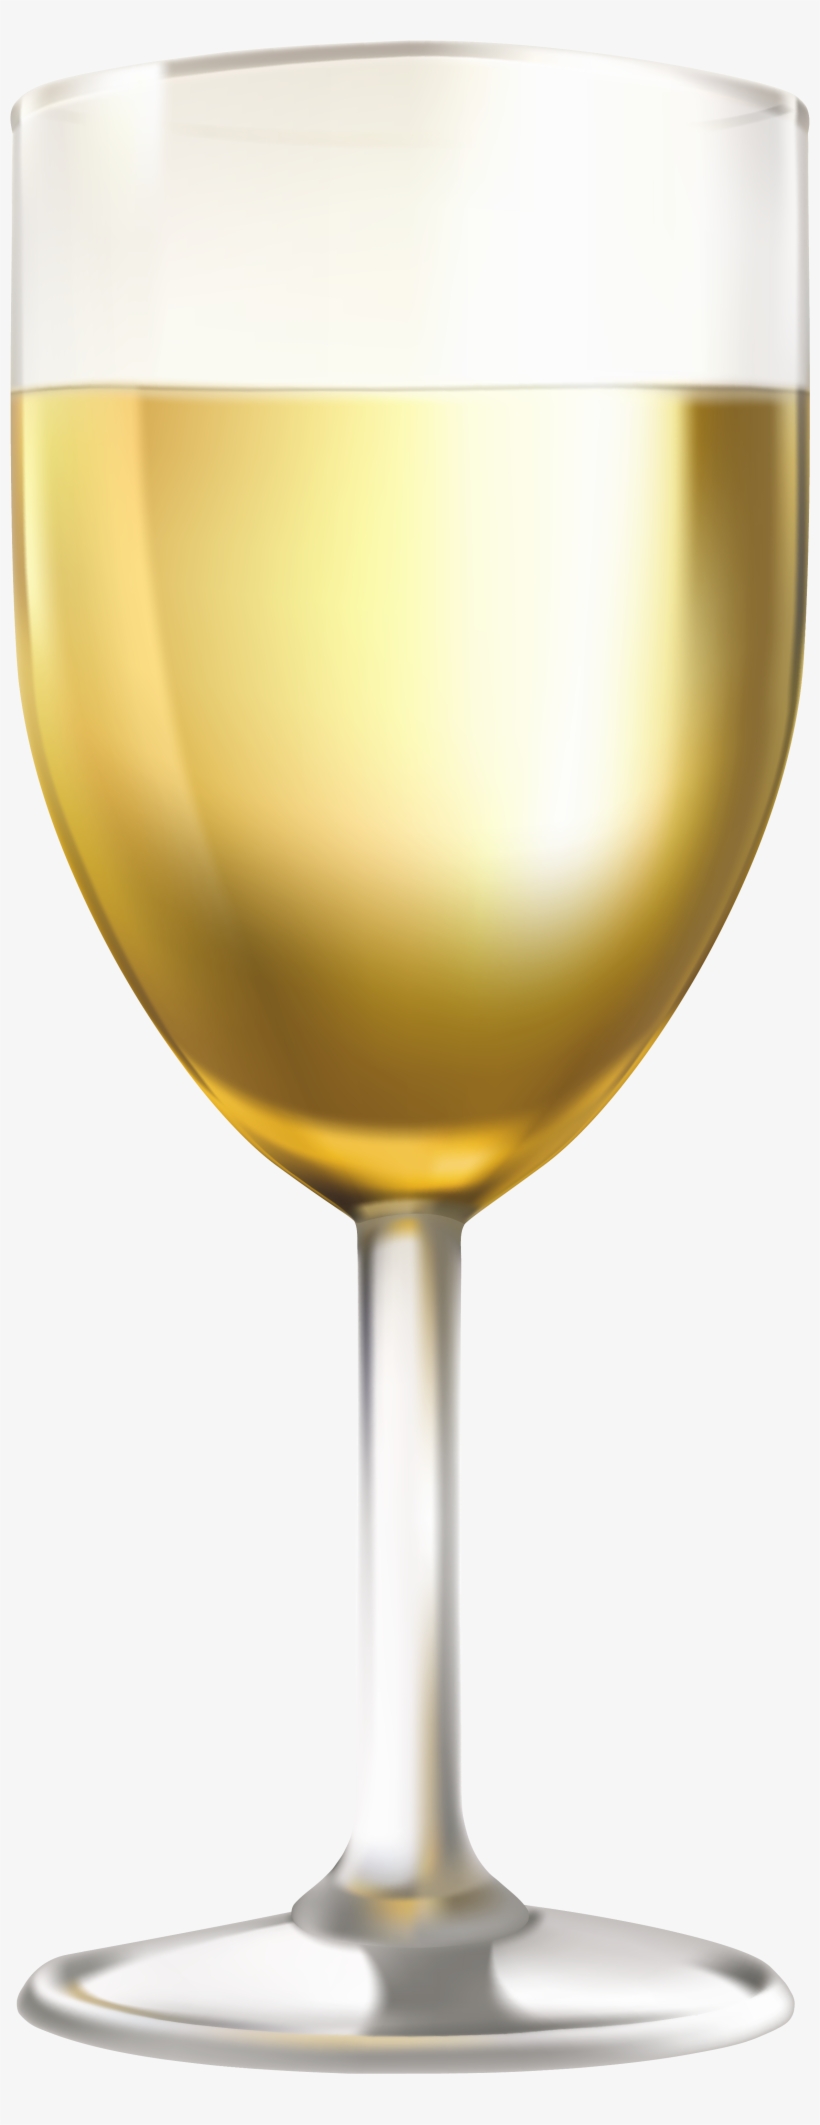 White Wine Glass Clip Art Image Happy Wine, White Wine - White Wine Glass Png, transparent png #40692